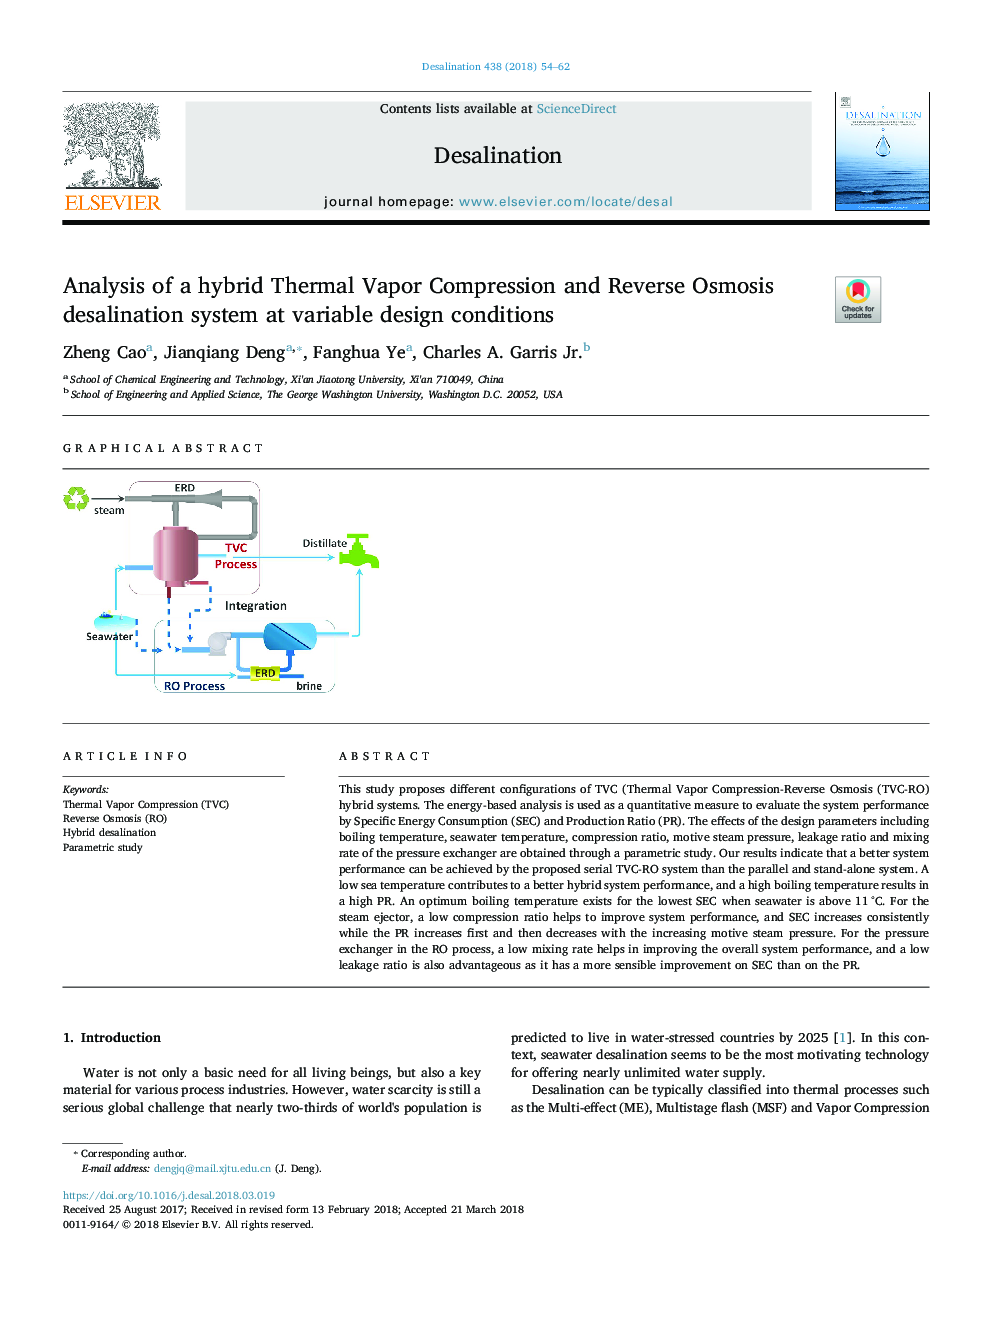 تجزیه و تحلیل ترکیبی فشرده سازی بخار حرارتی و سیستم آب شیرین کننده اسمز معکوس در شرایط طراحی متغیر 